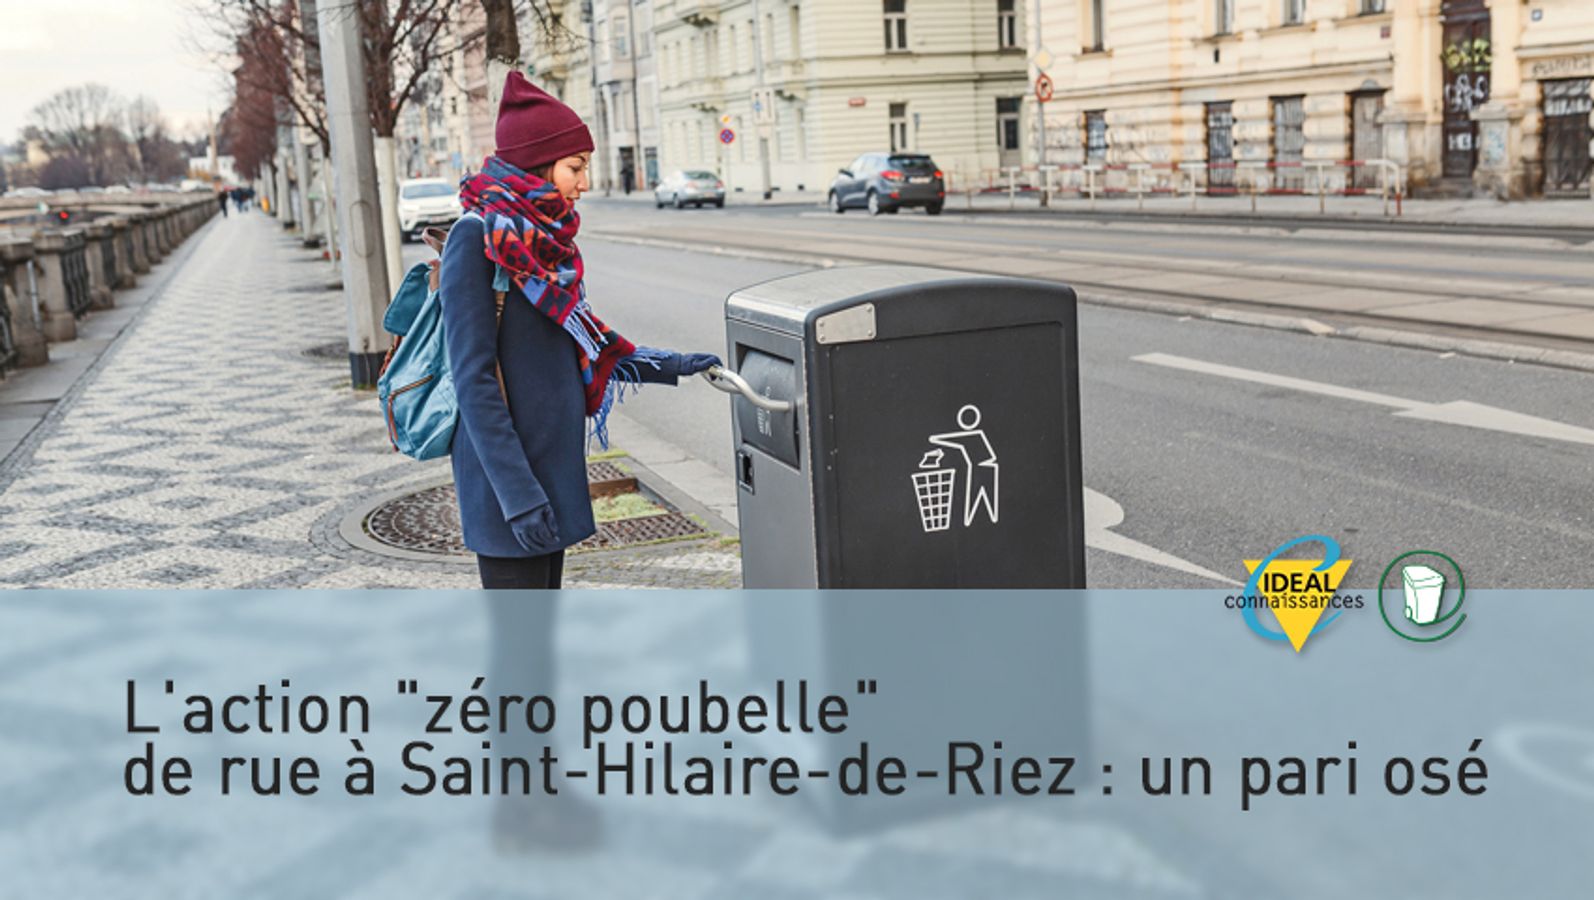 L'action "zéro poubelle" de rue à Saint-Hilaire-de-Riez : un pari osé